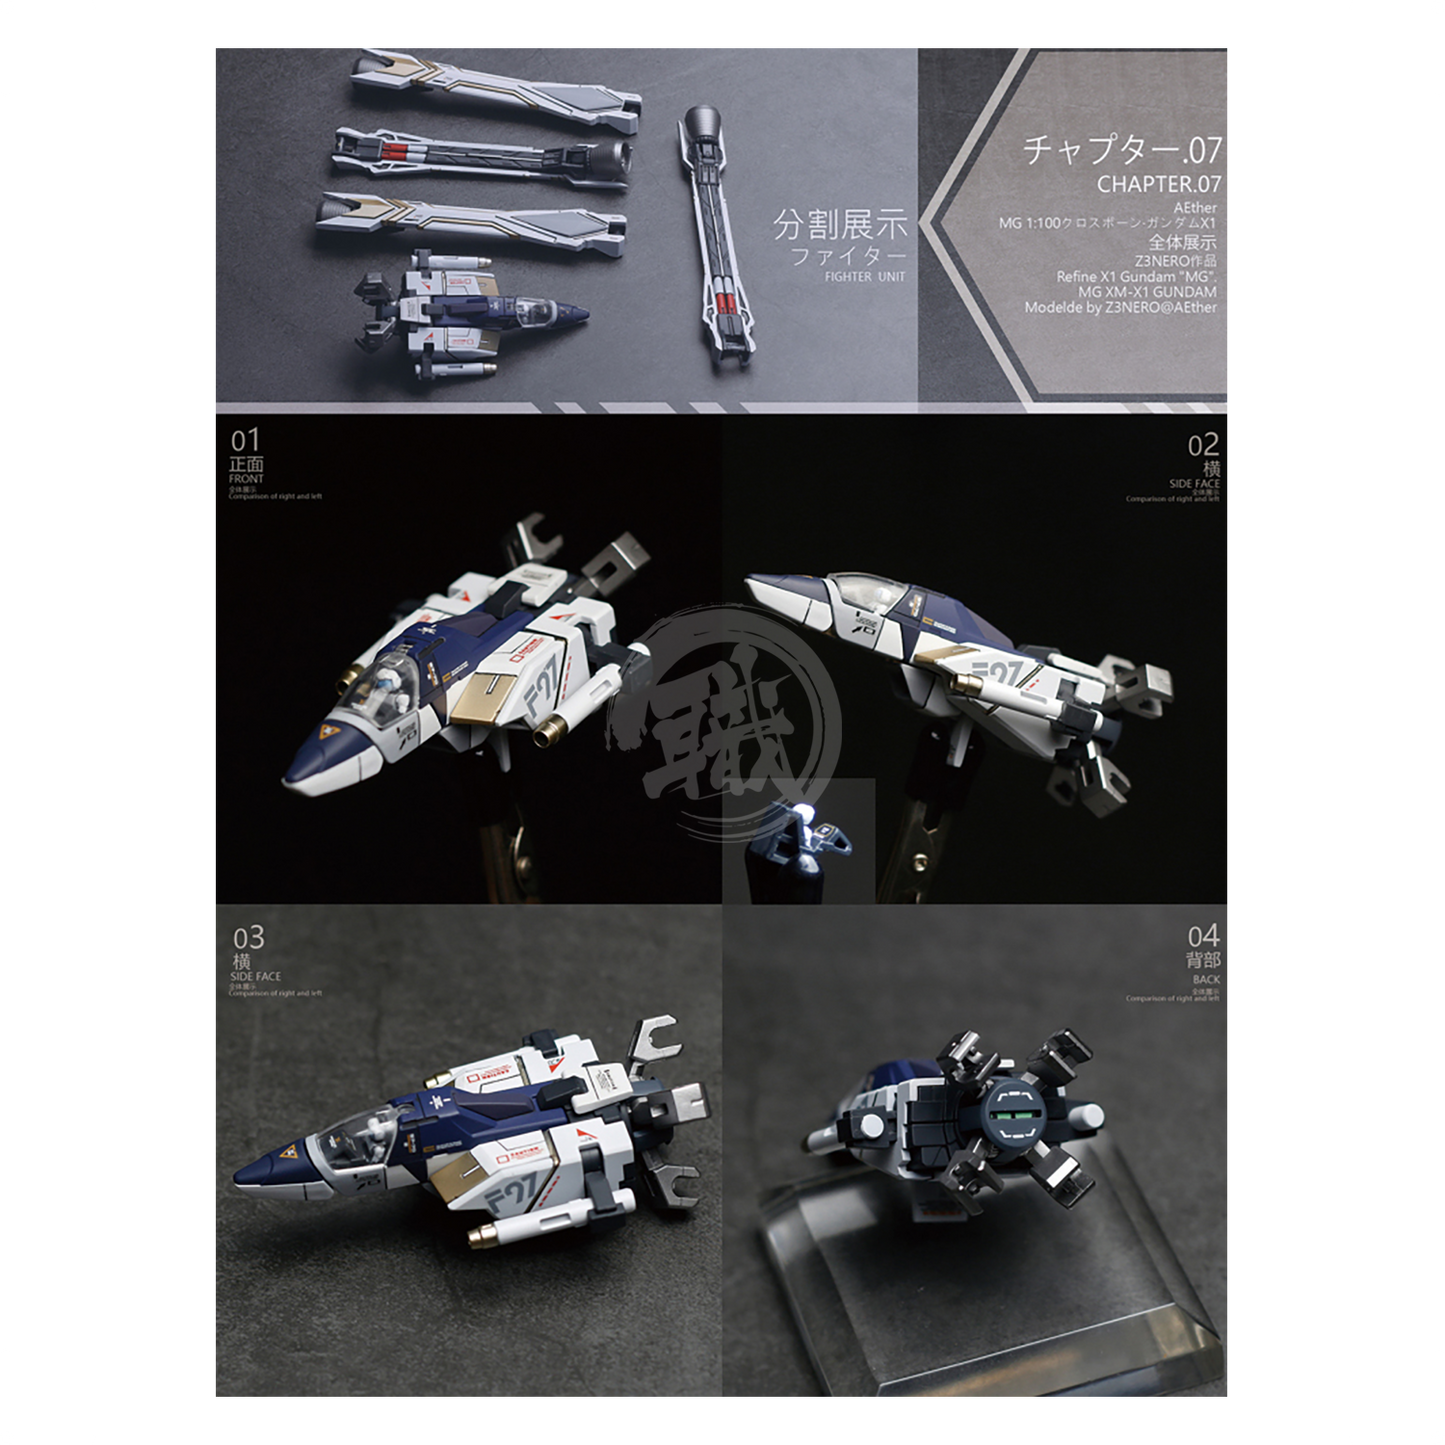 AETHER Studio - MG Crossbone Gundam X-1 Full Cloth Resin Conversion Kit - ShokuninGunpla